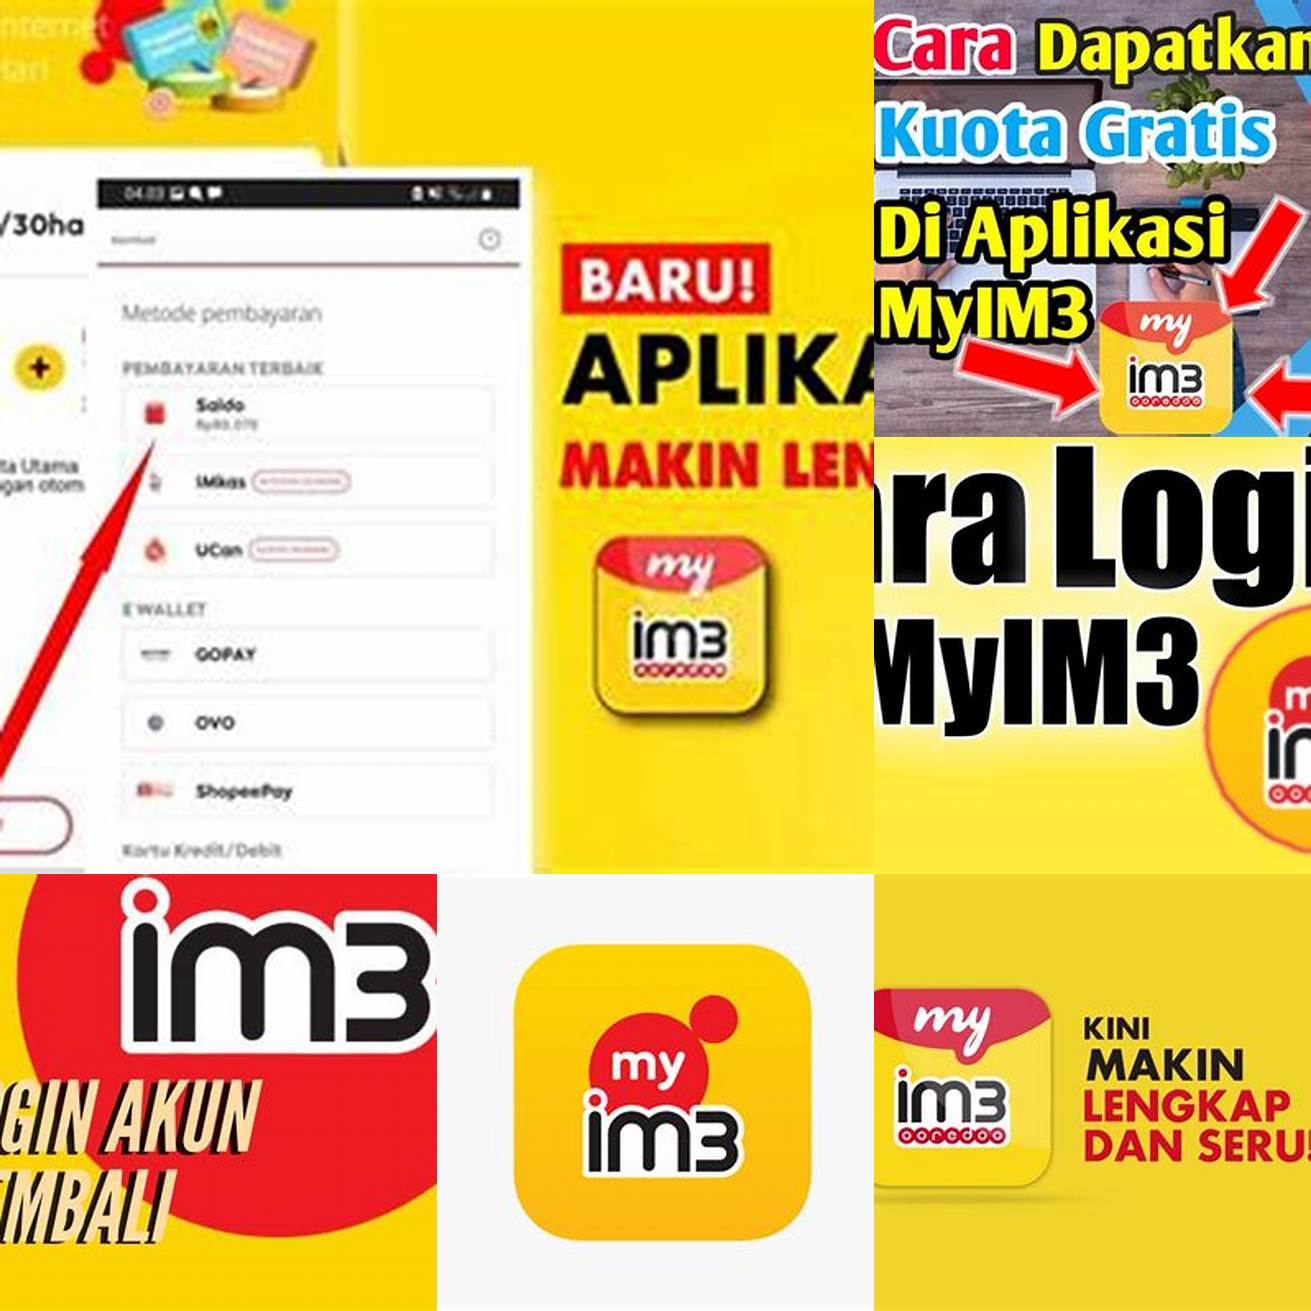 Melalui aplikasi MyIM3